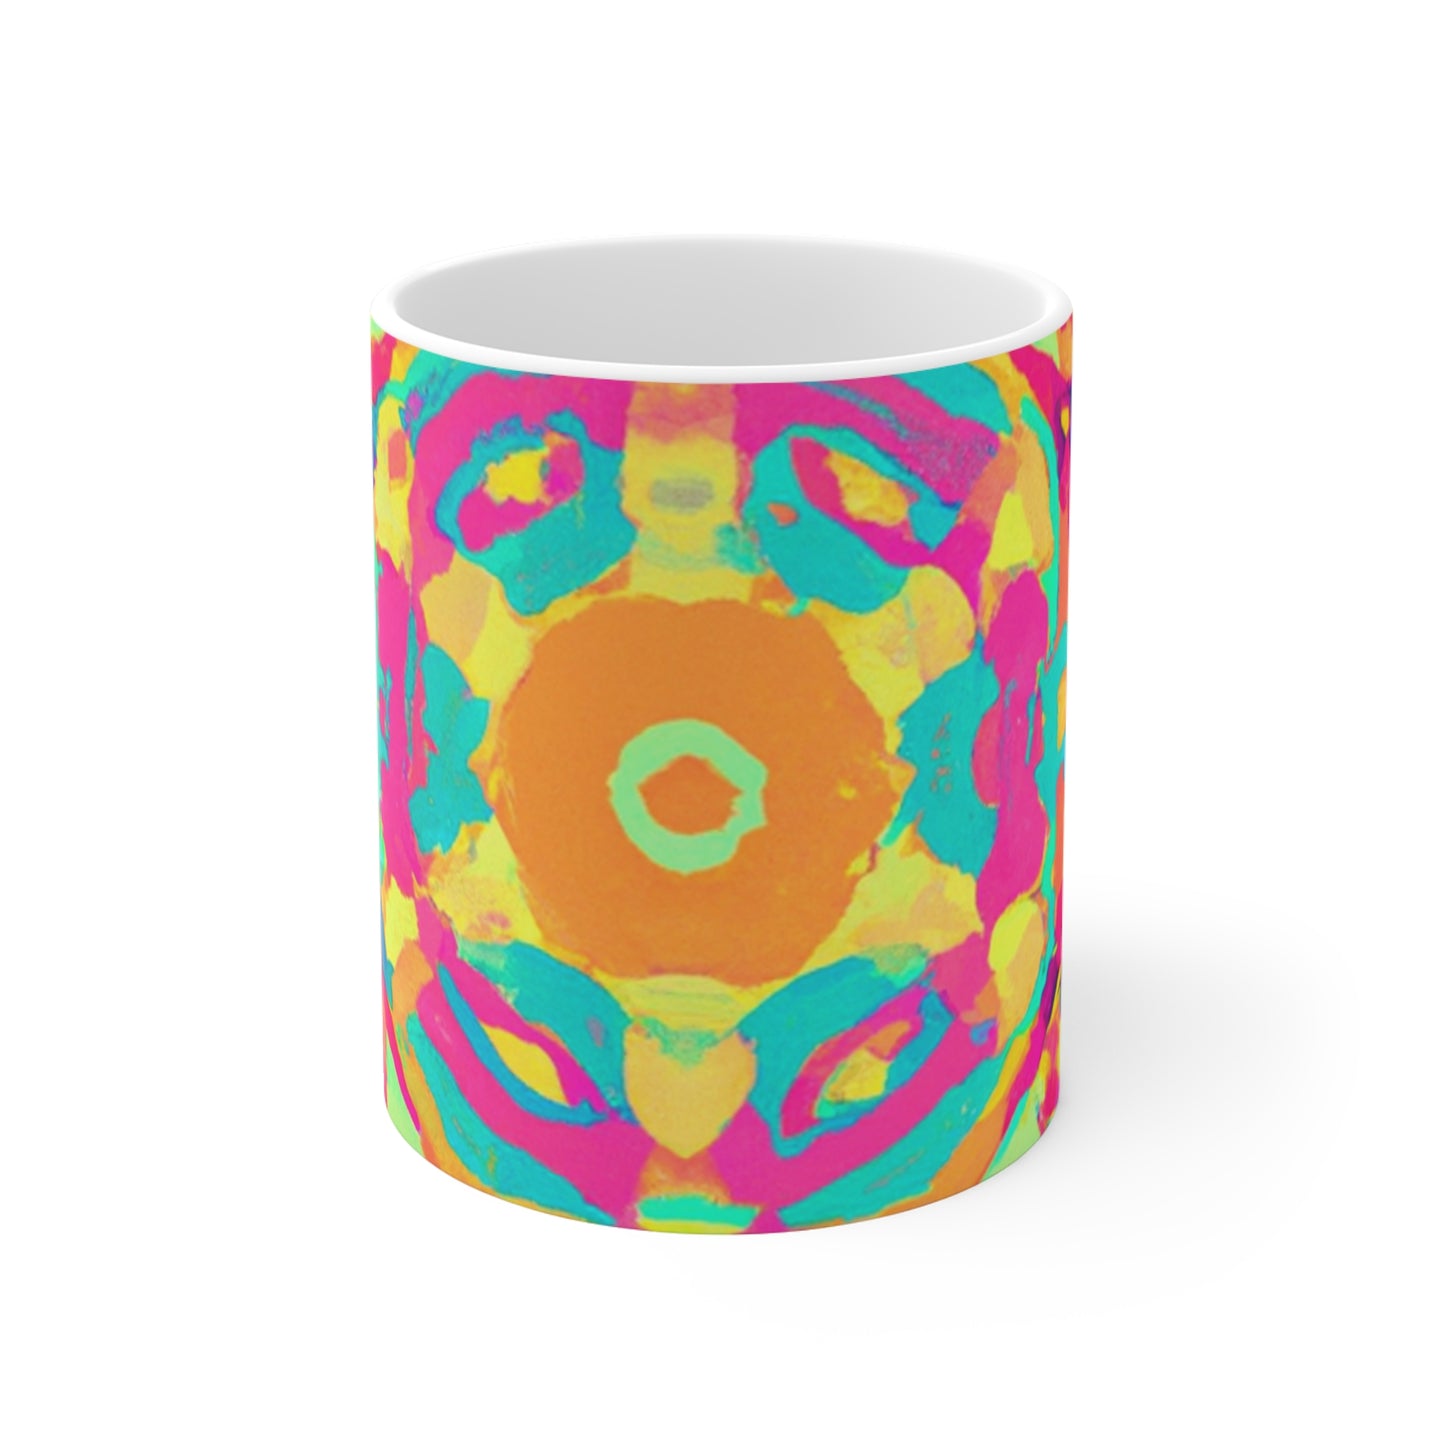 Della's Delightful Coffee - Psychedelic Coffee Cup Mug 11 Ounce